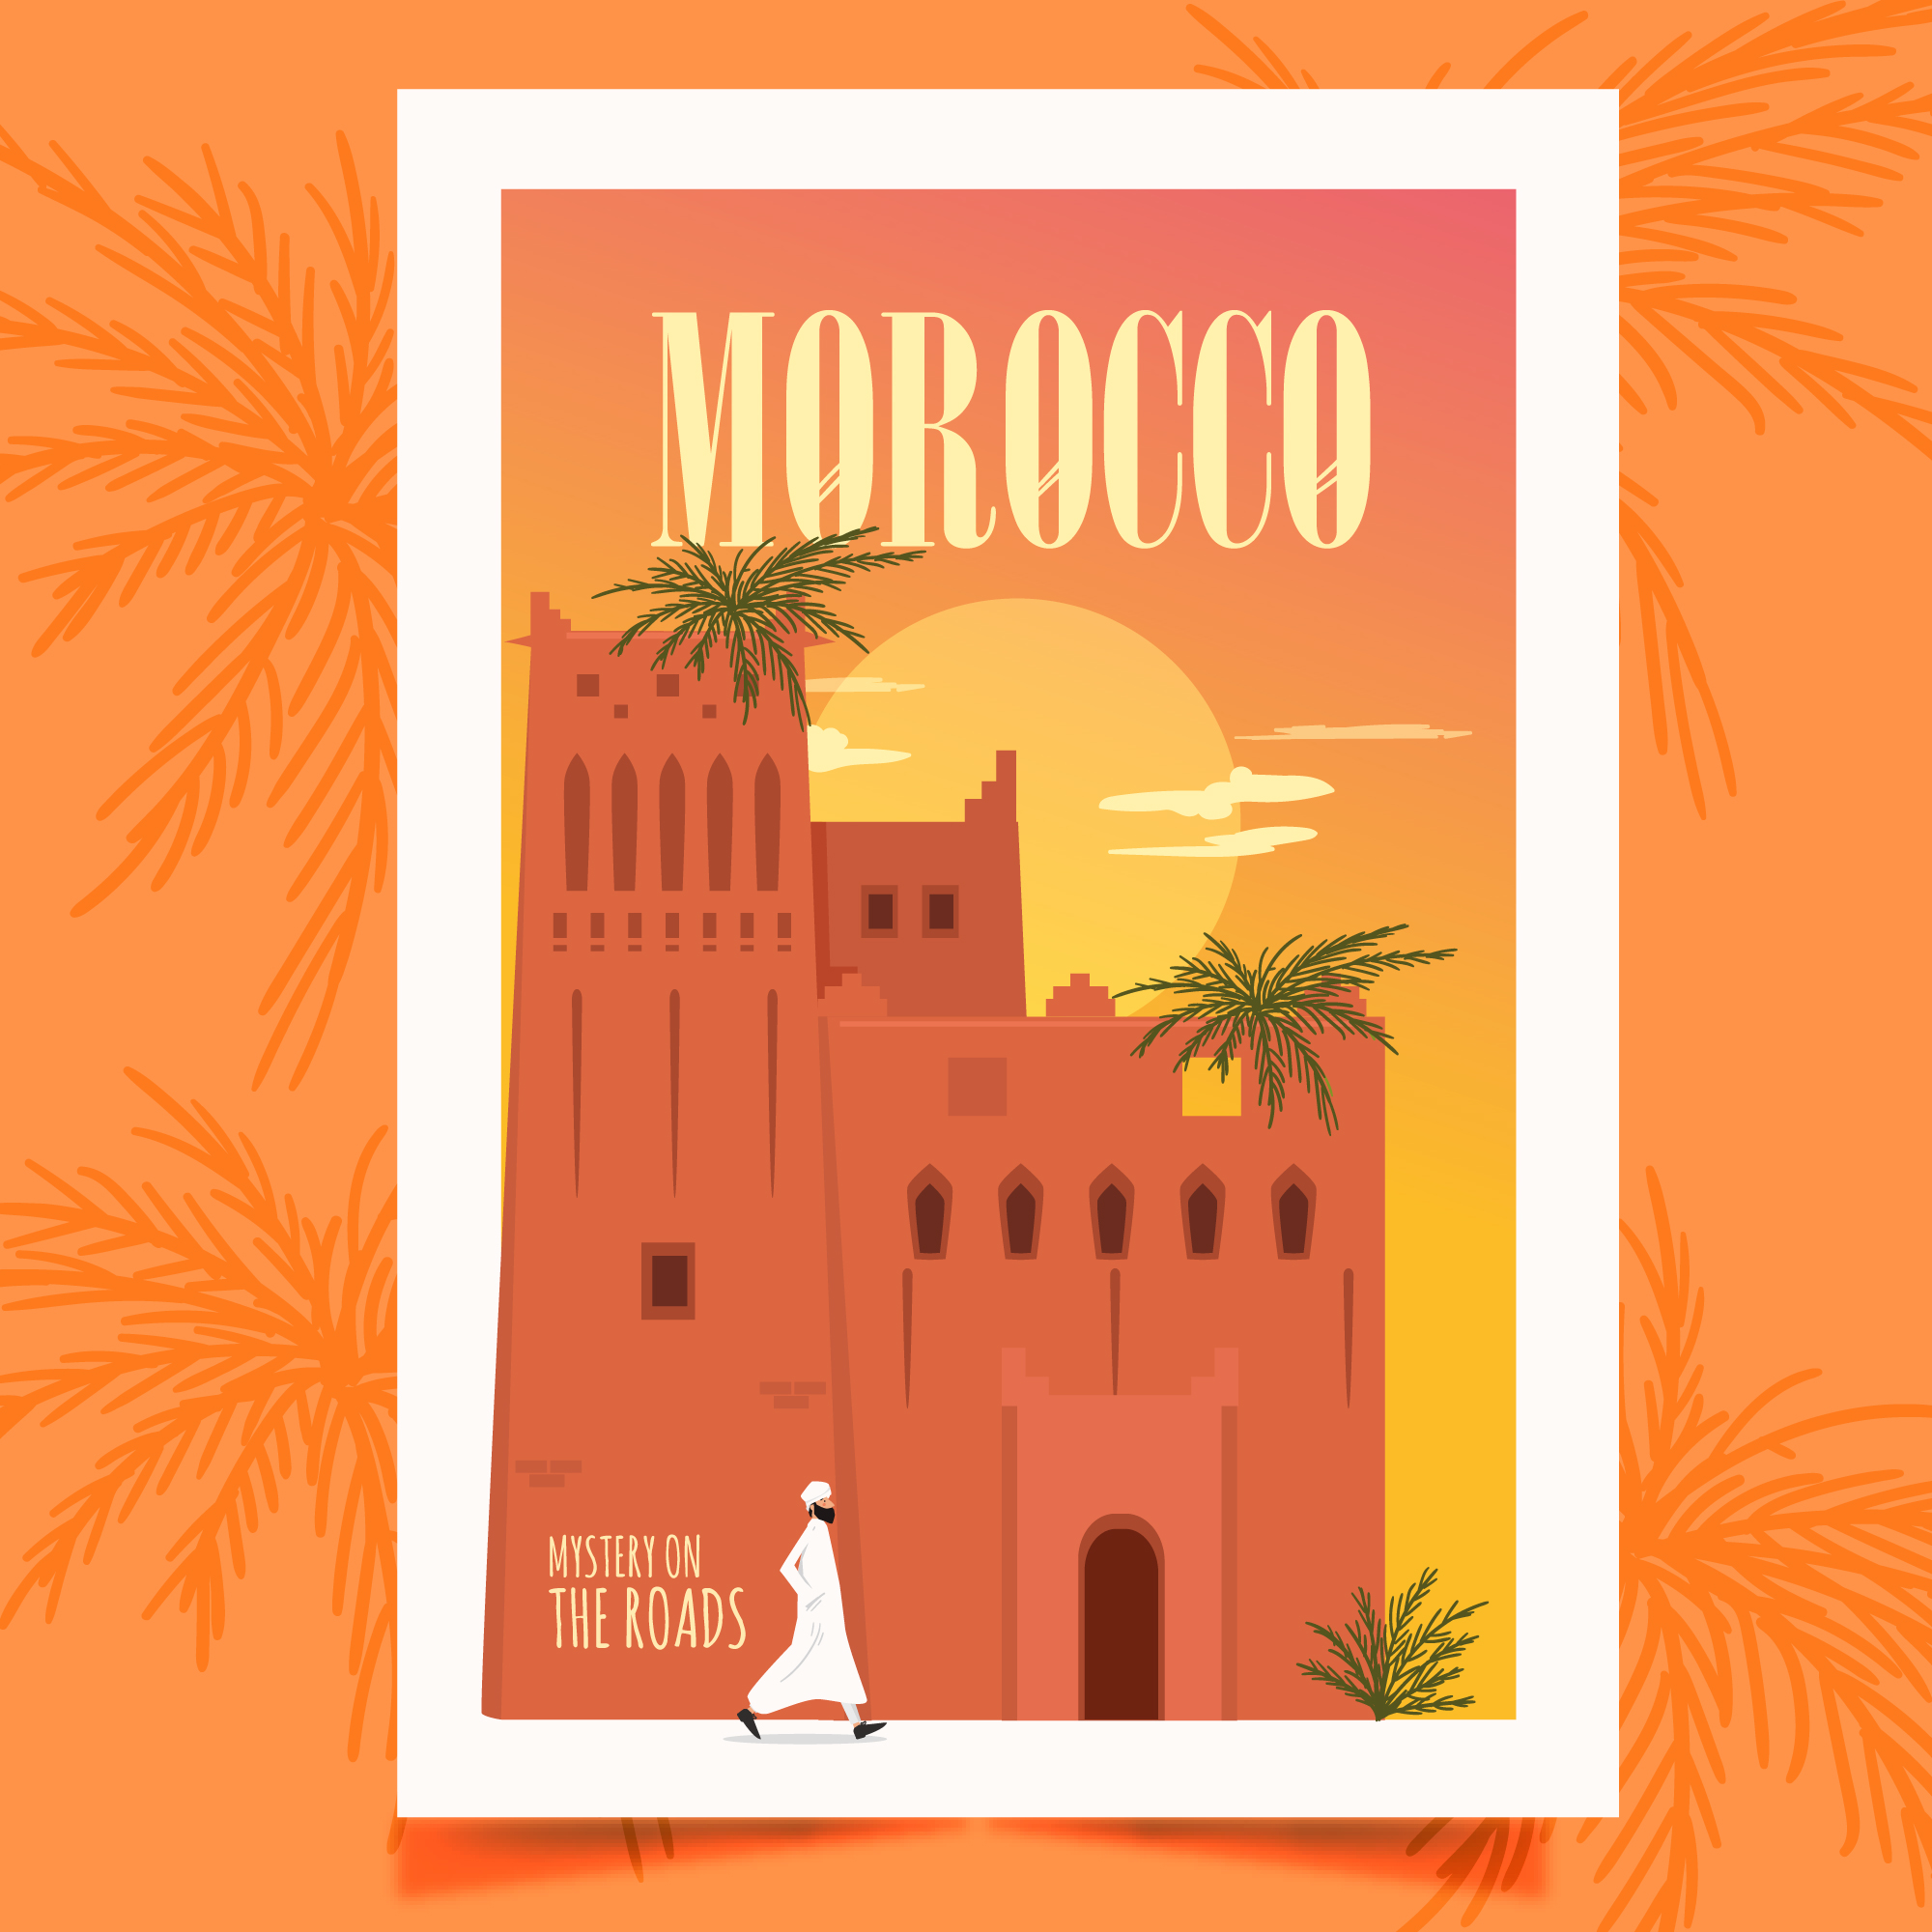 Libro Marruecos